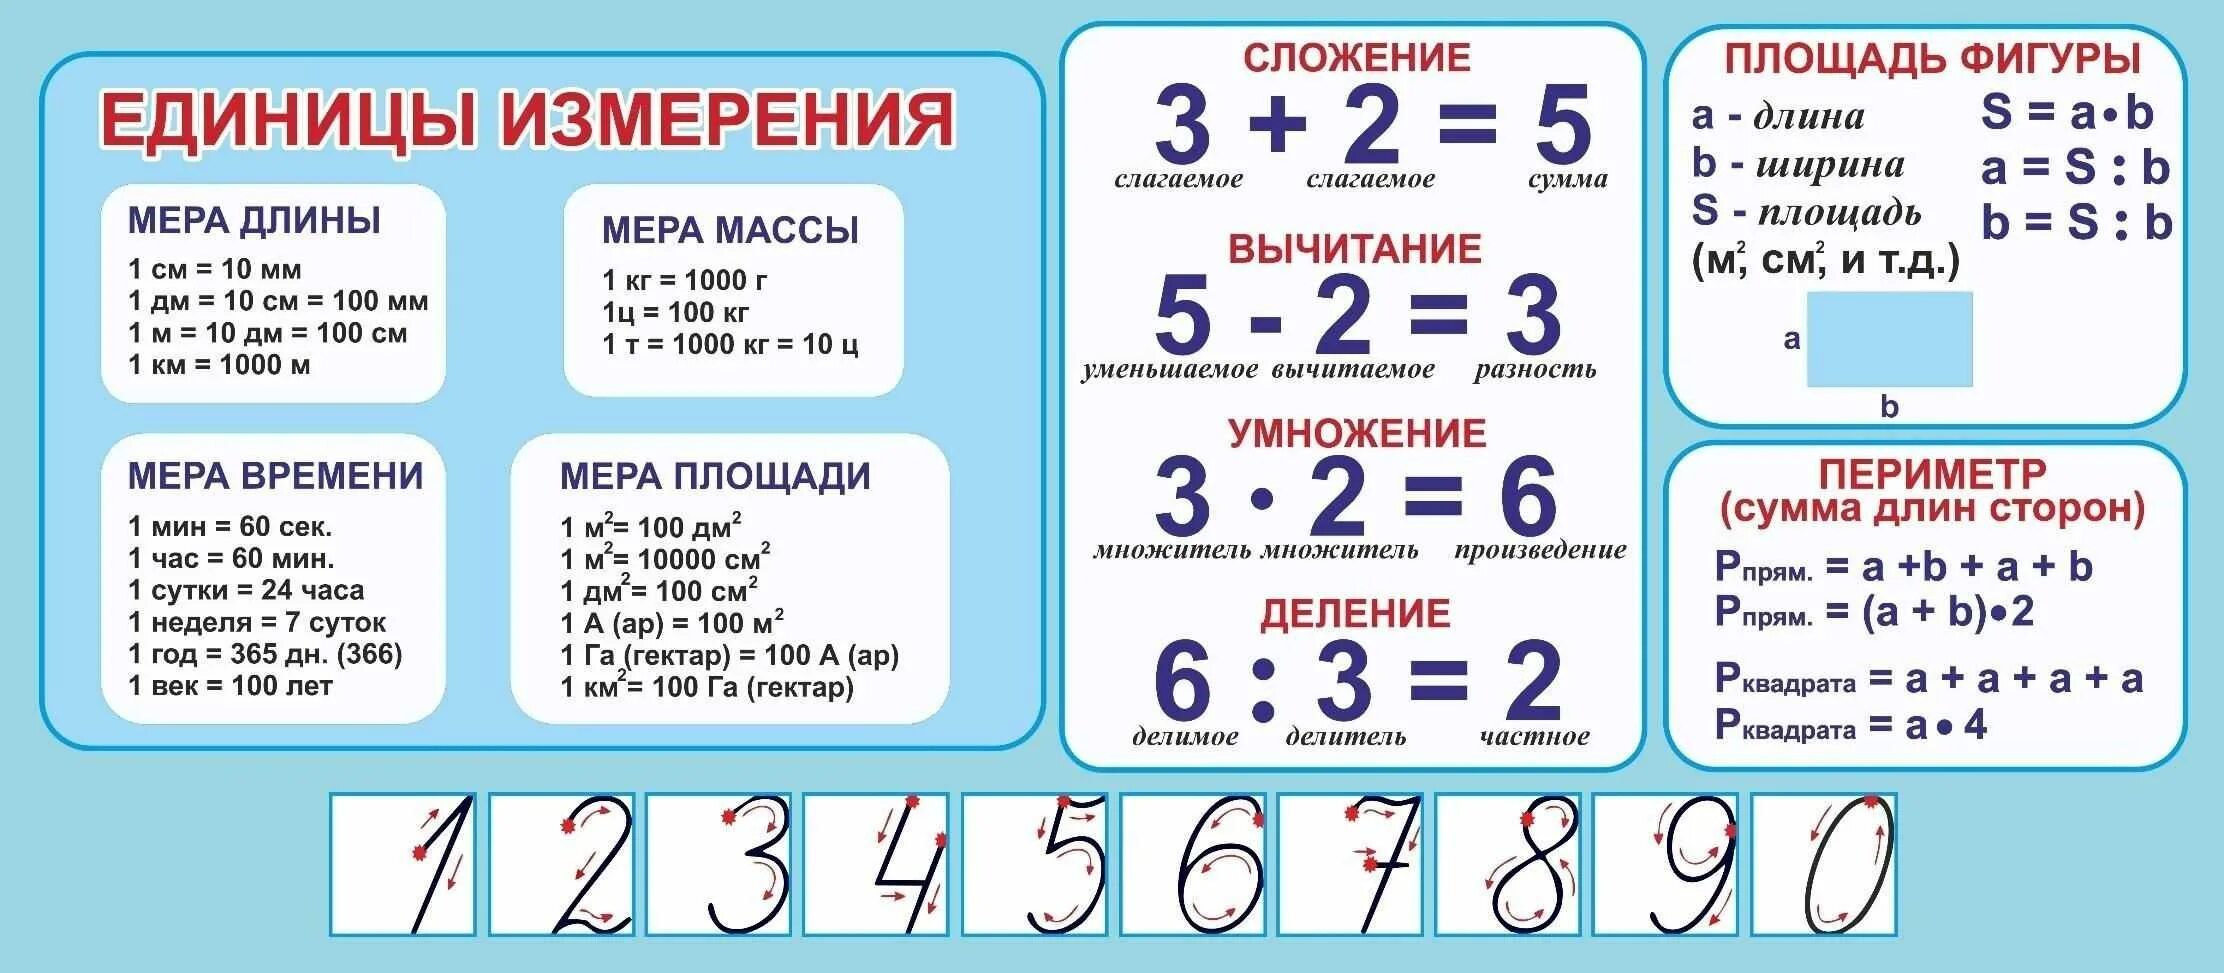 Таблица сложения чисел, формулы и примеры